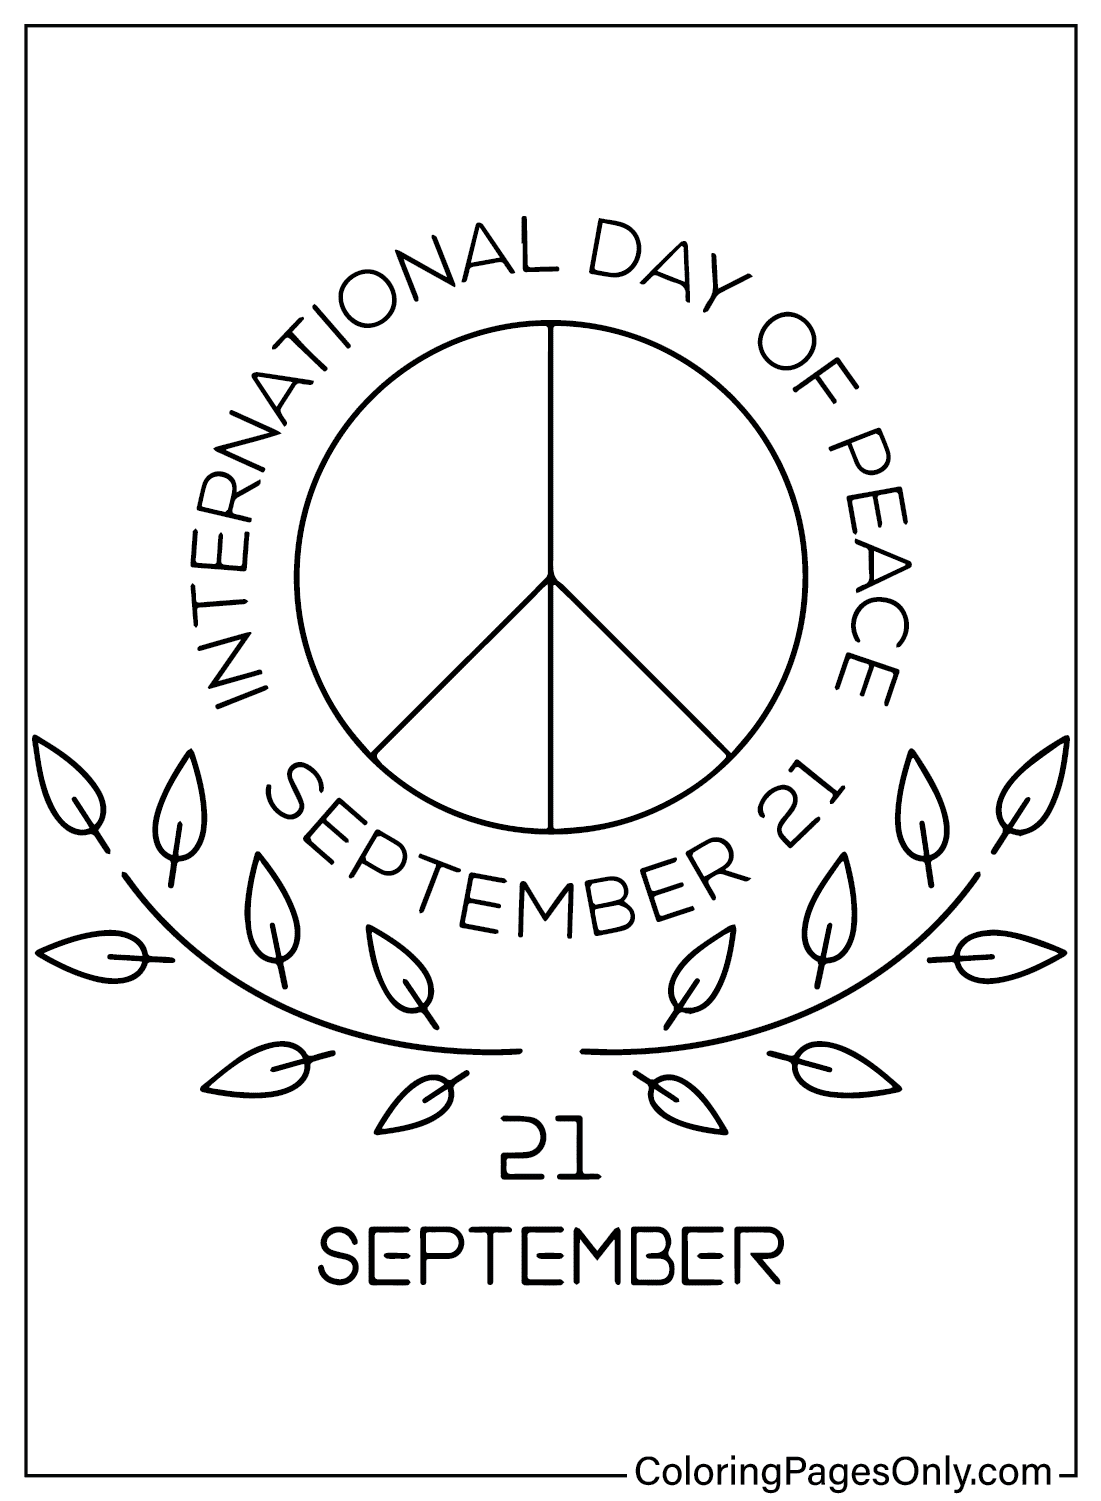 Immagini della Giornata Internazionale della Pace da colorare dalla Giornata Internazionale della Pace